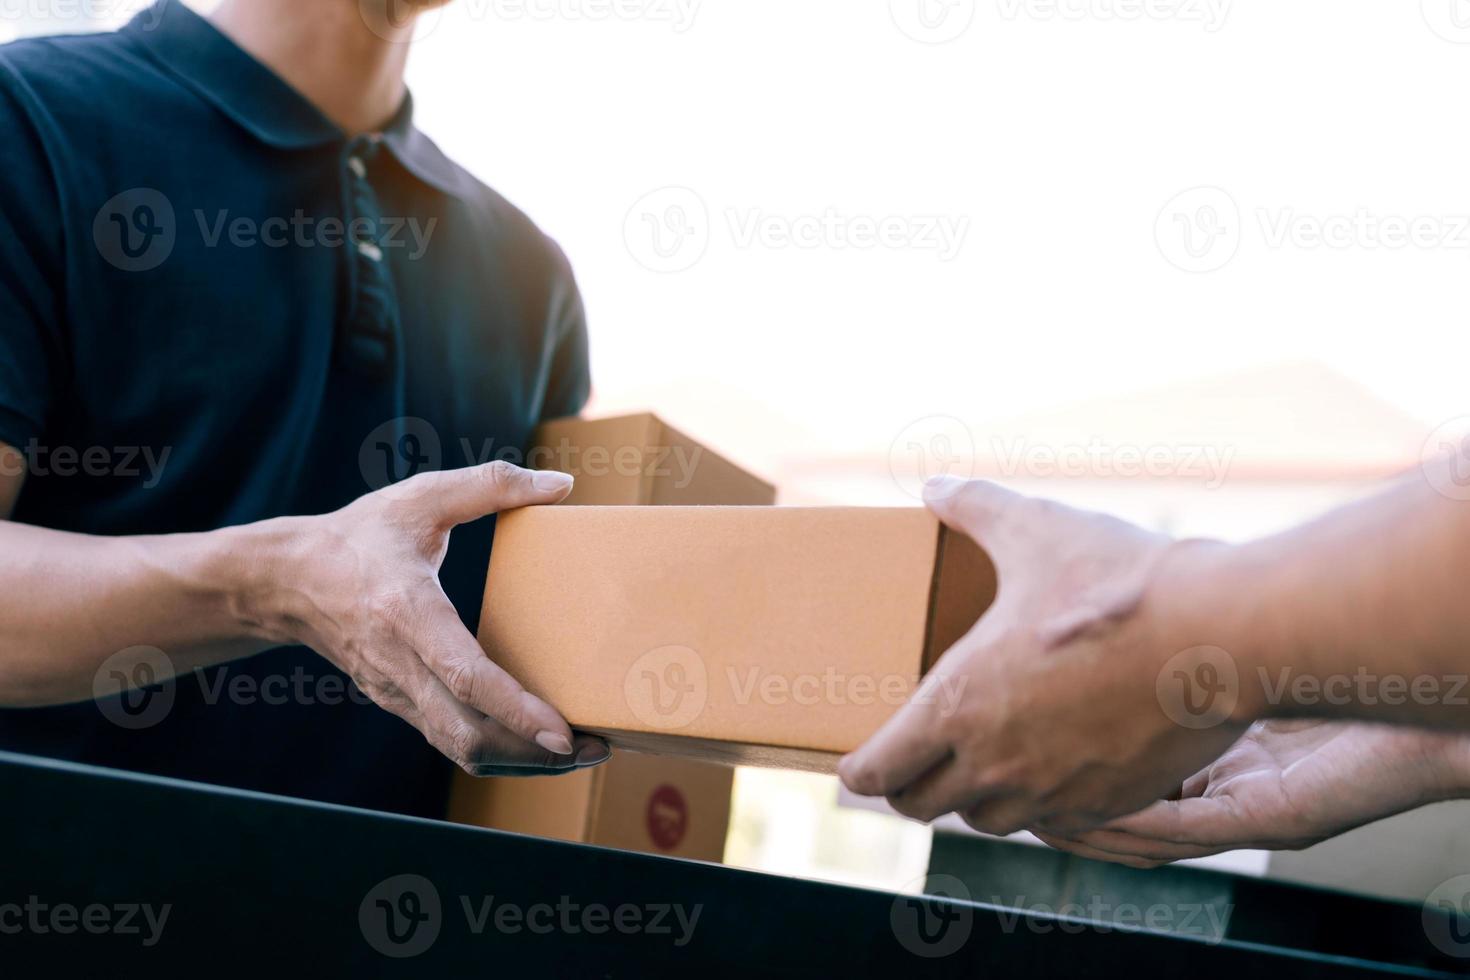 le transporteur de fret asiatique tient une boîte en carton avec le colis à l'intérieur et le destinataire signe le colis. photo